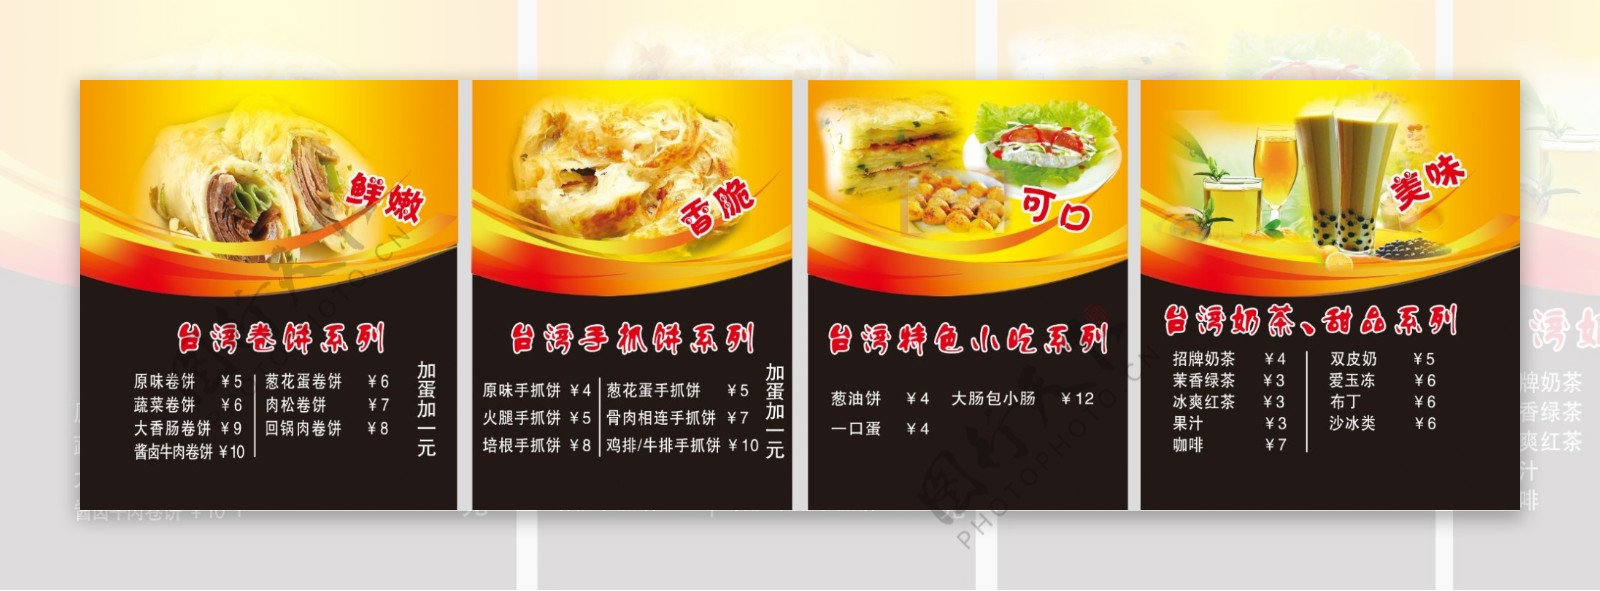 价格表台湾小吃图片